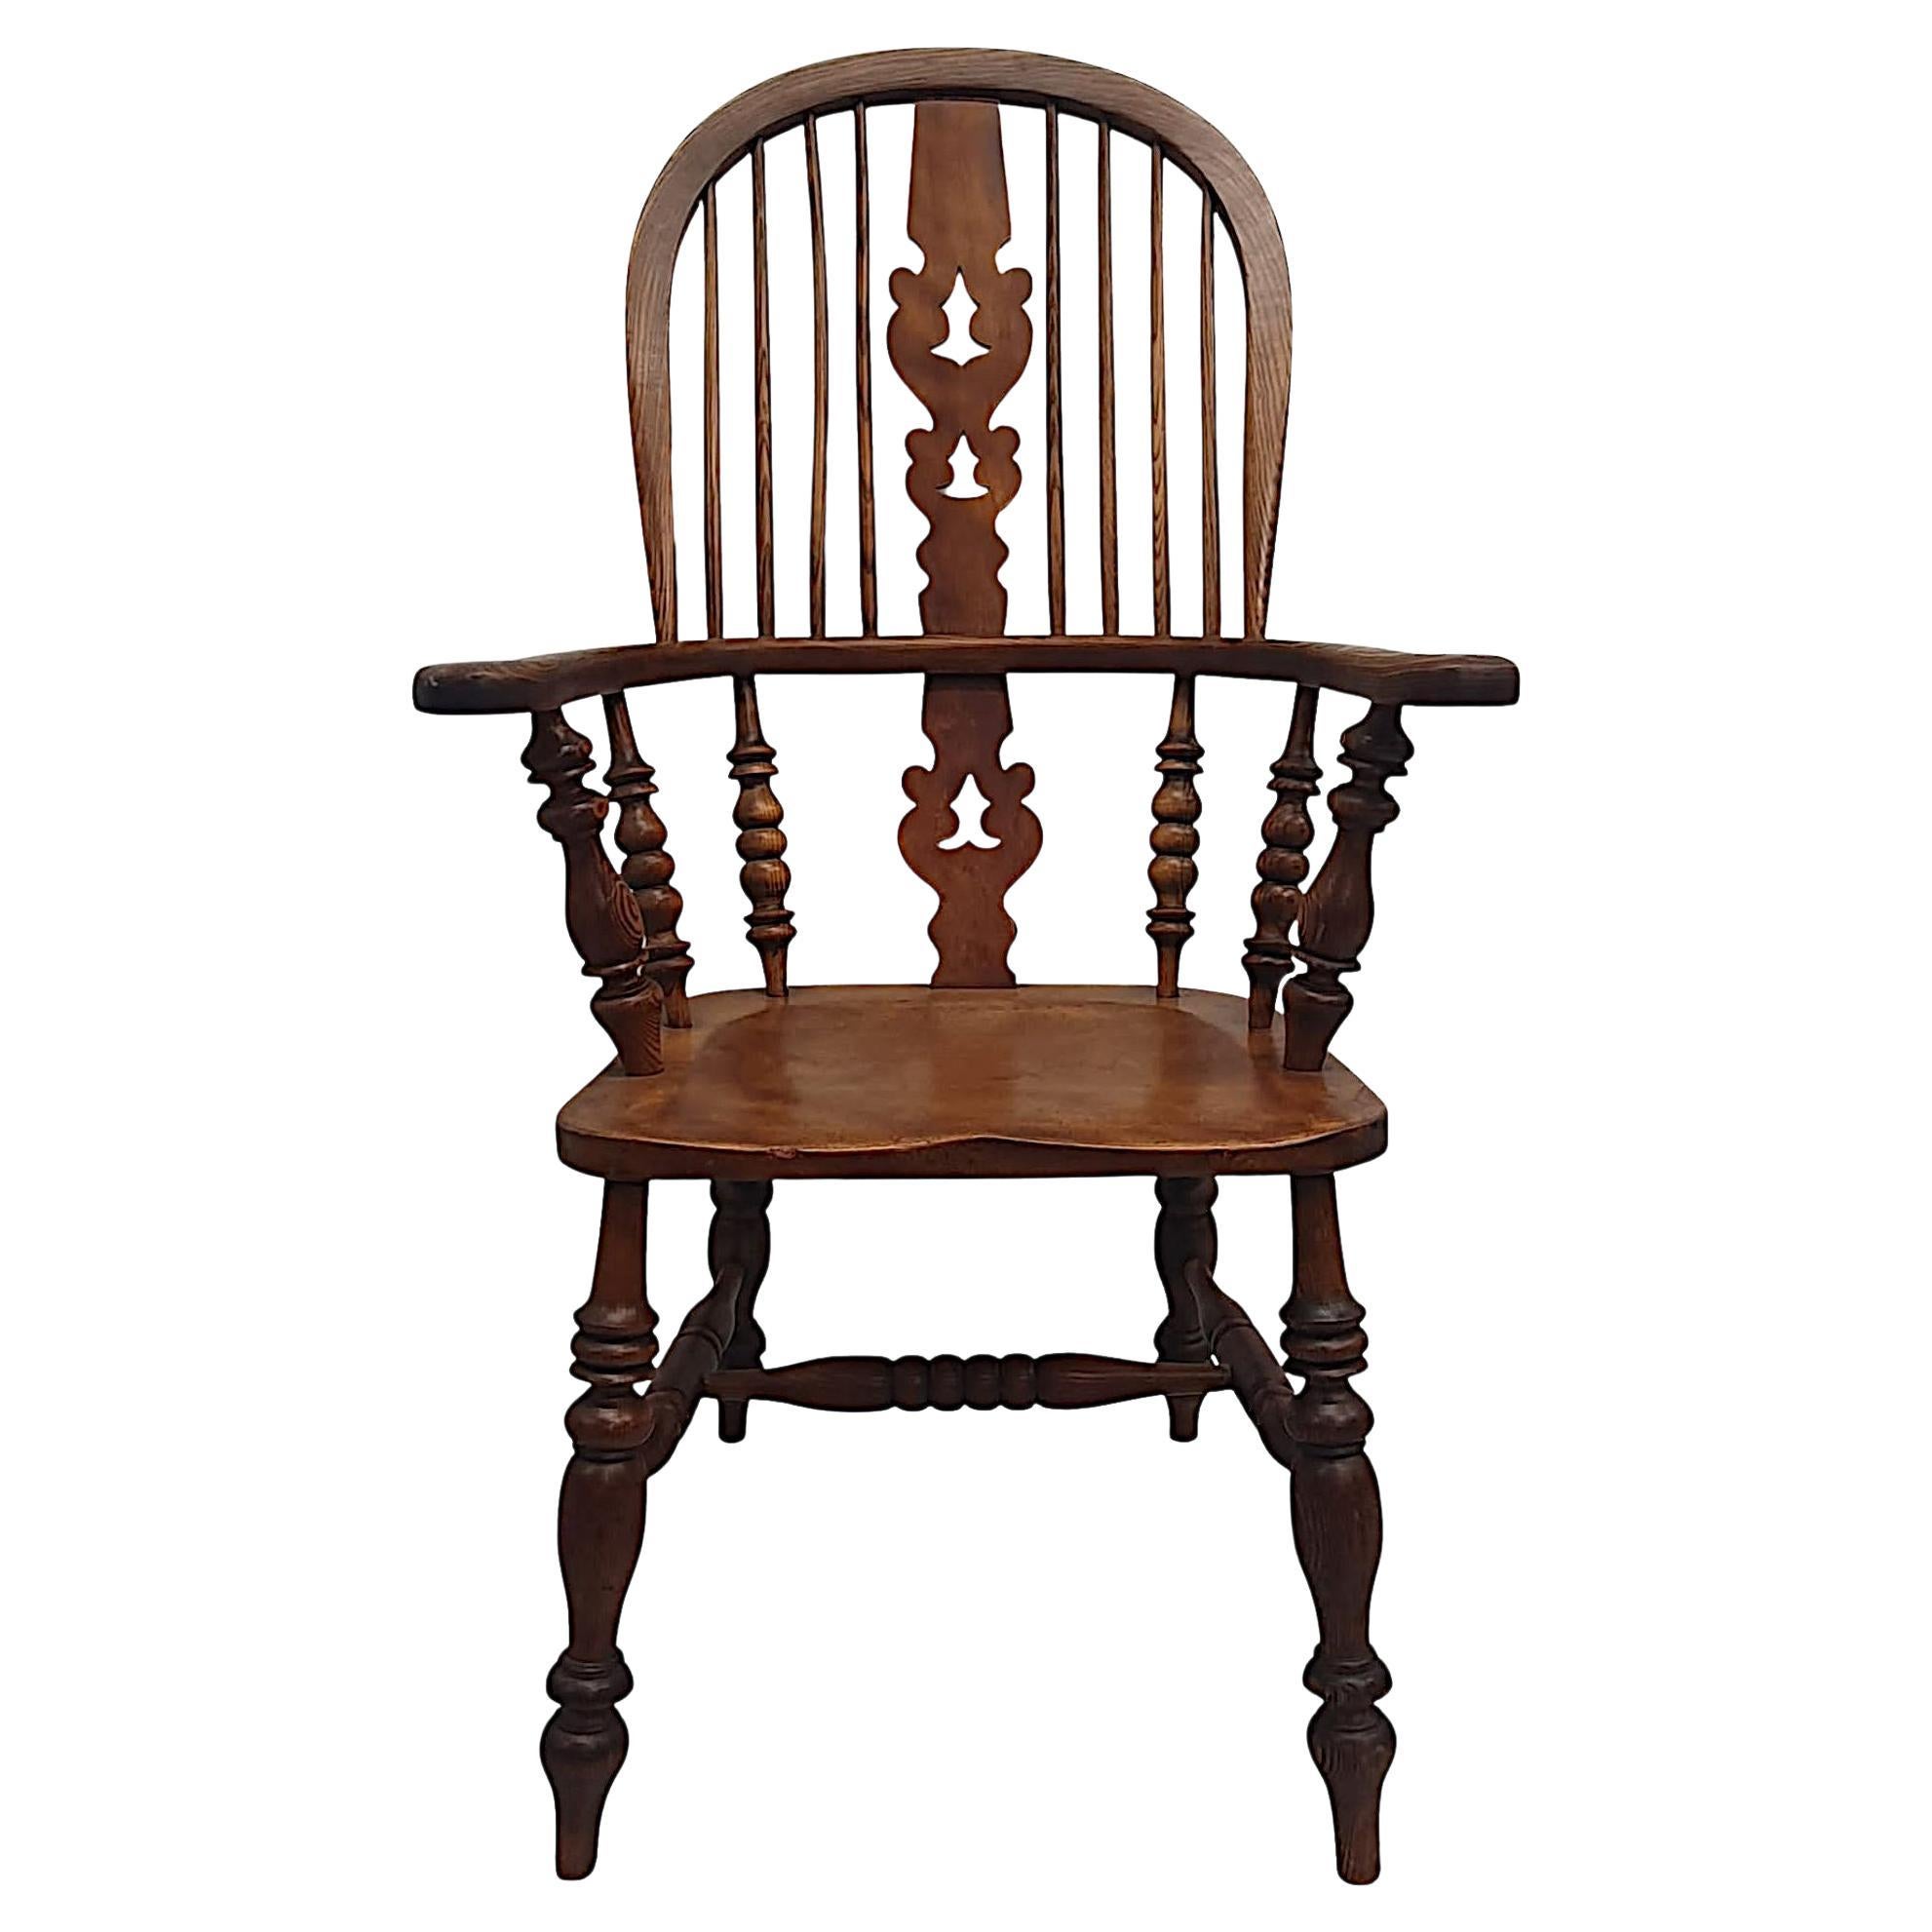 Rare fauteuil Windsor du 19ème siècle